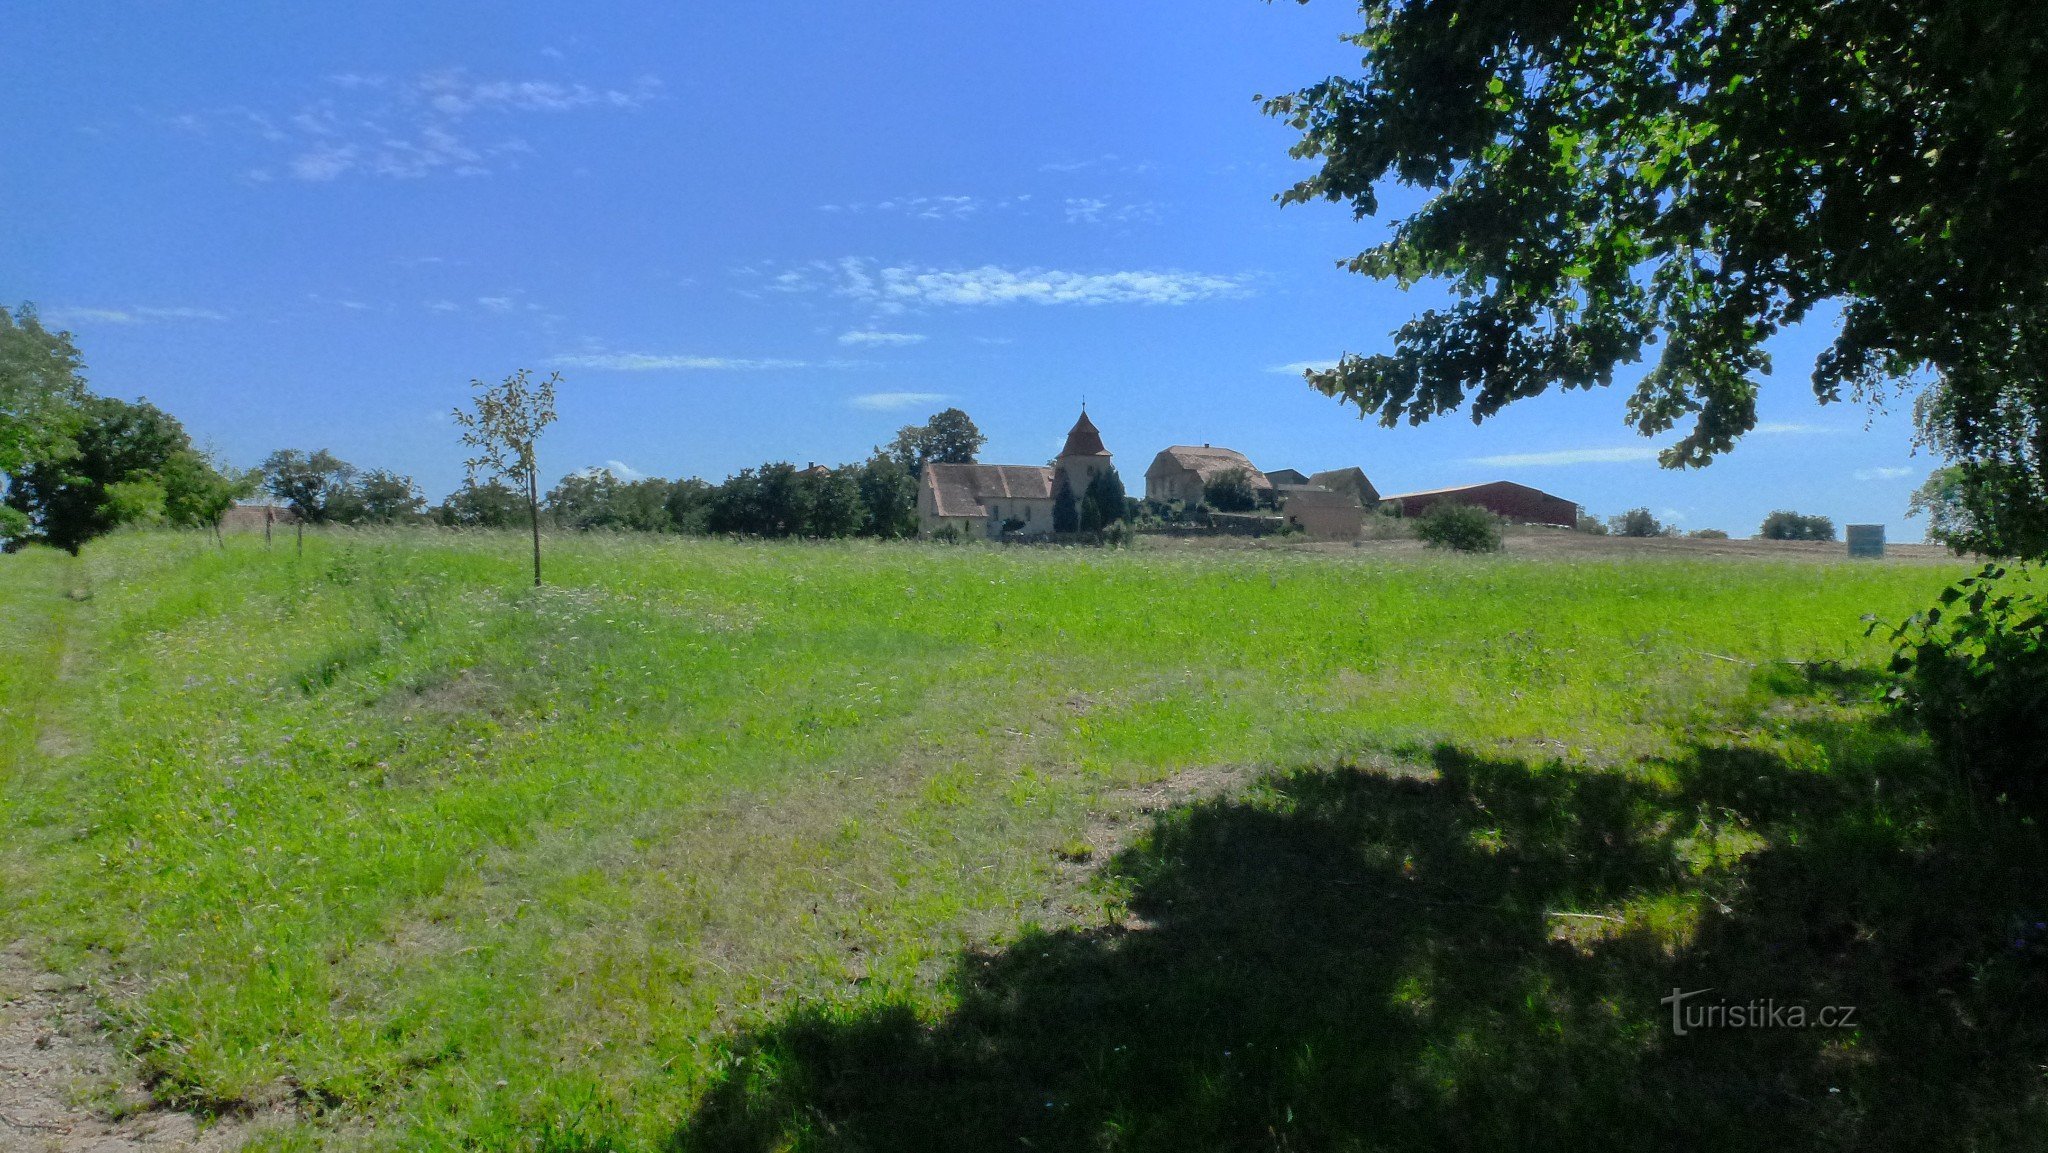 Die Dominante des Dorfes ist die bereits erwähnte frühgotische Kirche St. Martin